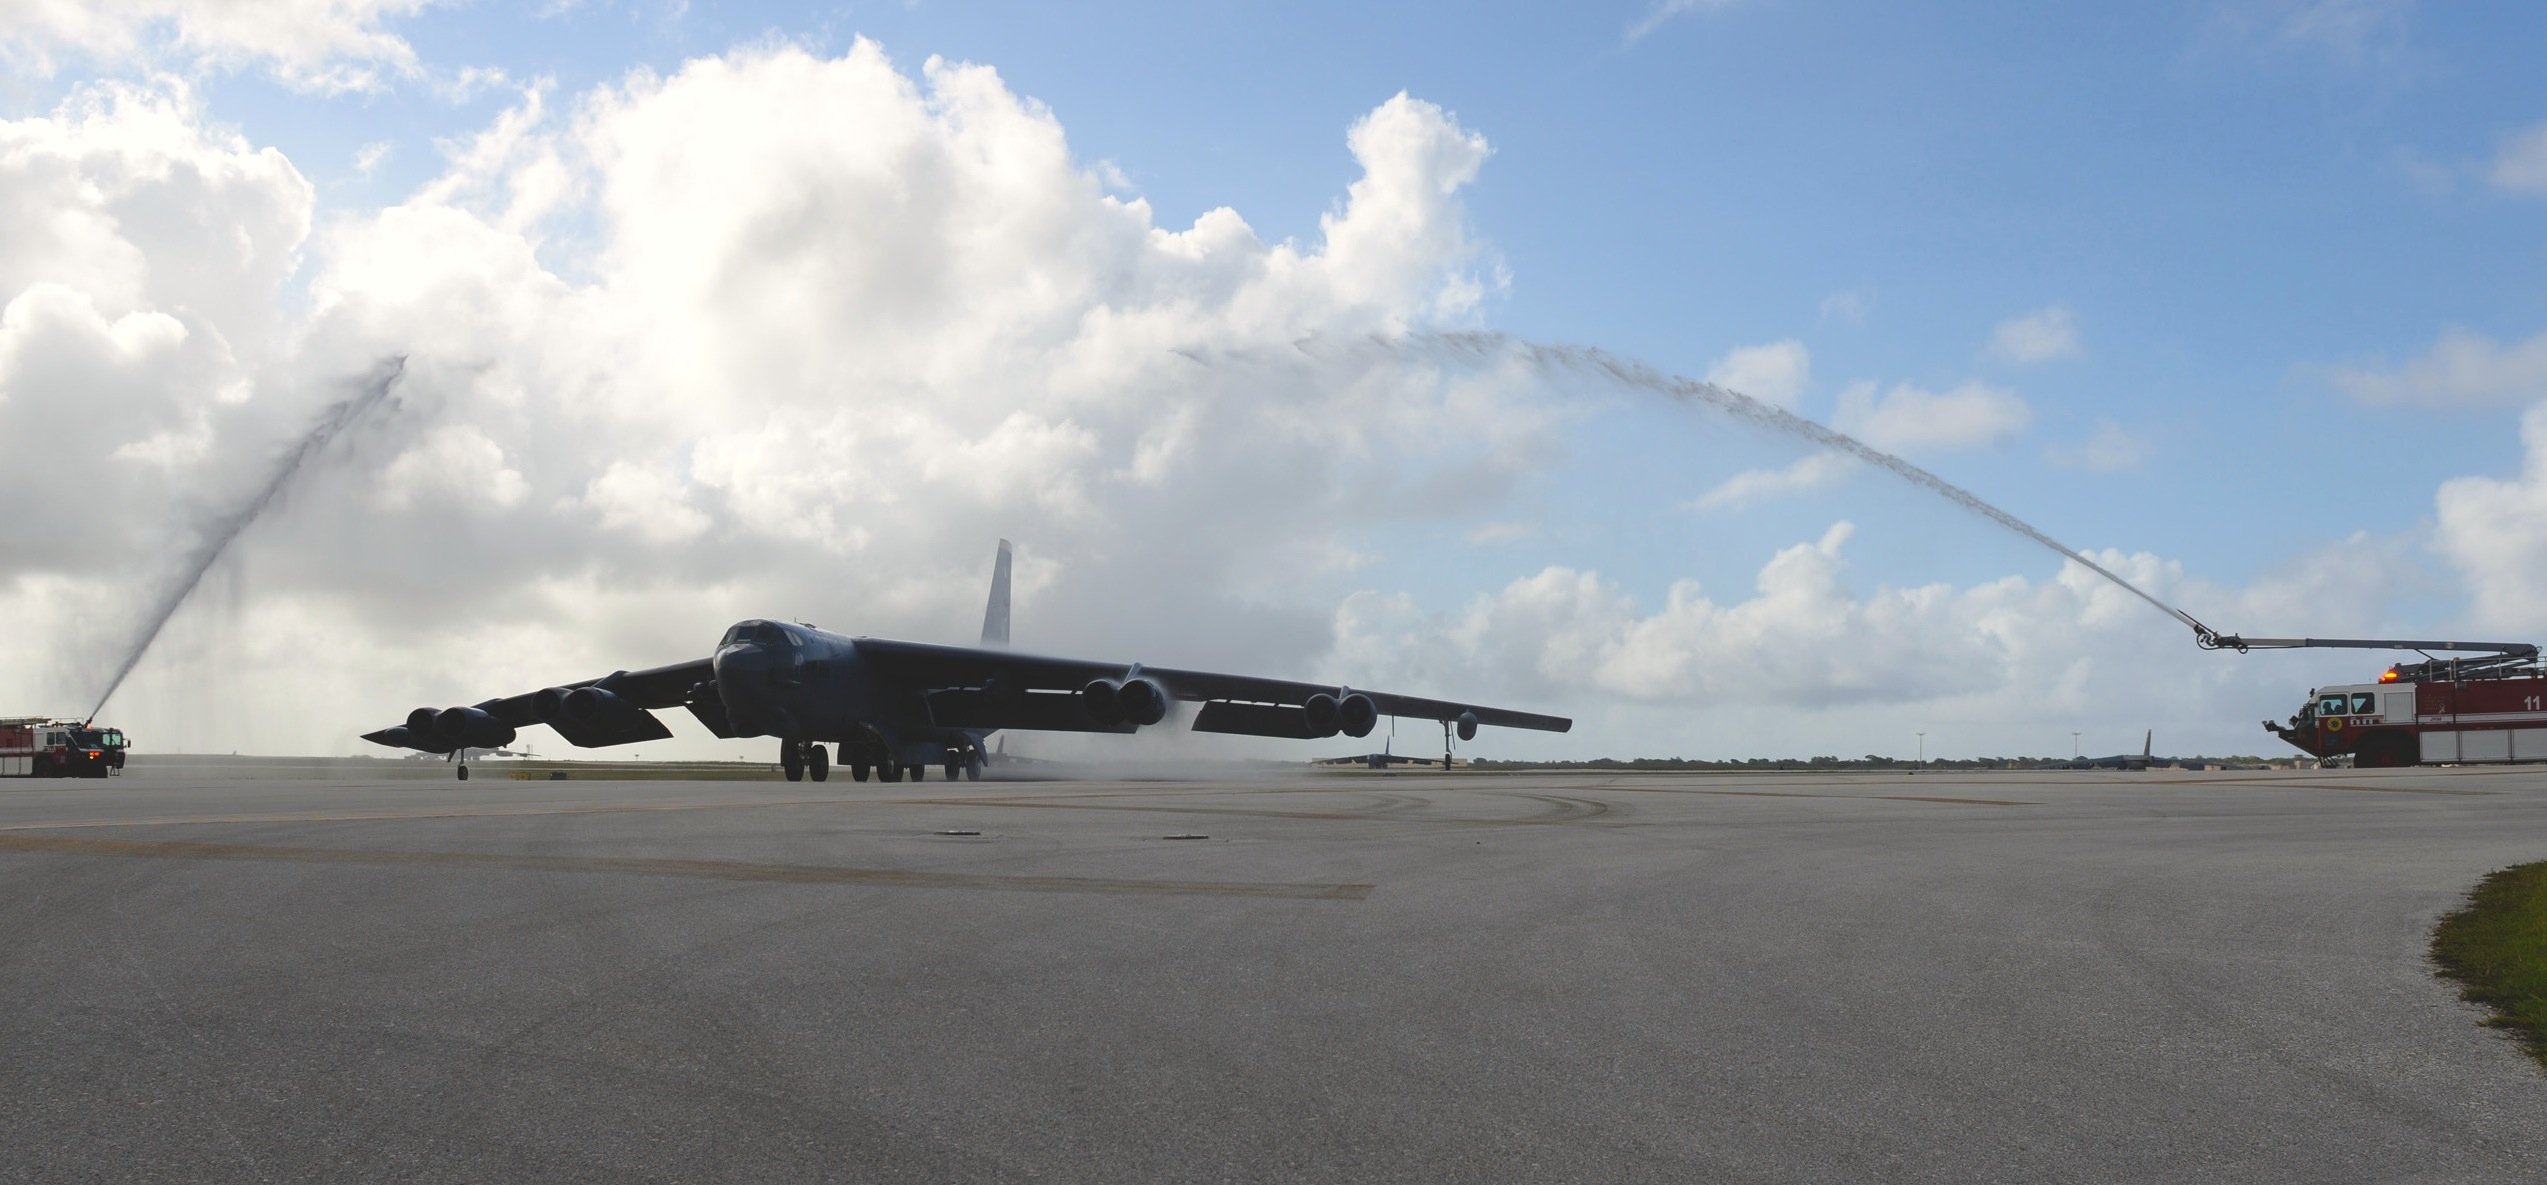 B-52-Bomber auf dem amerikanischen Luftwaffenstützpunkt auf Guam im Pazifik.